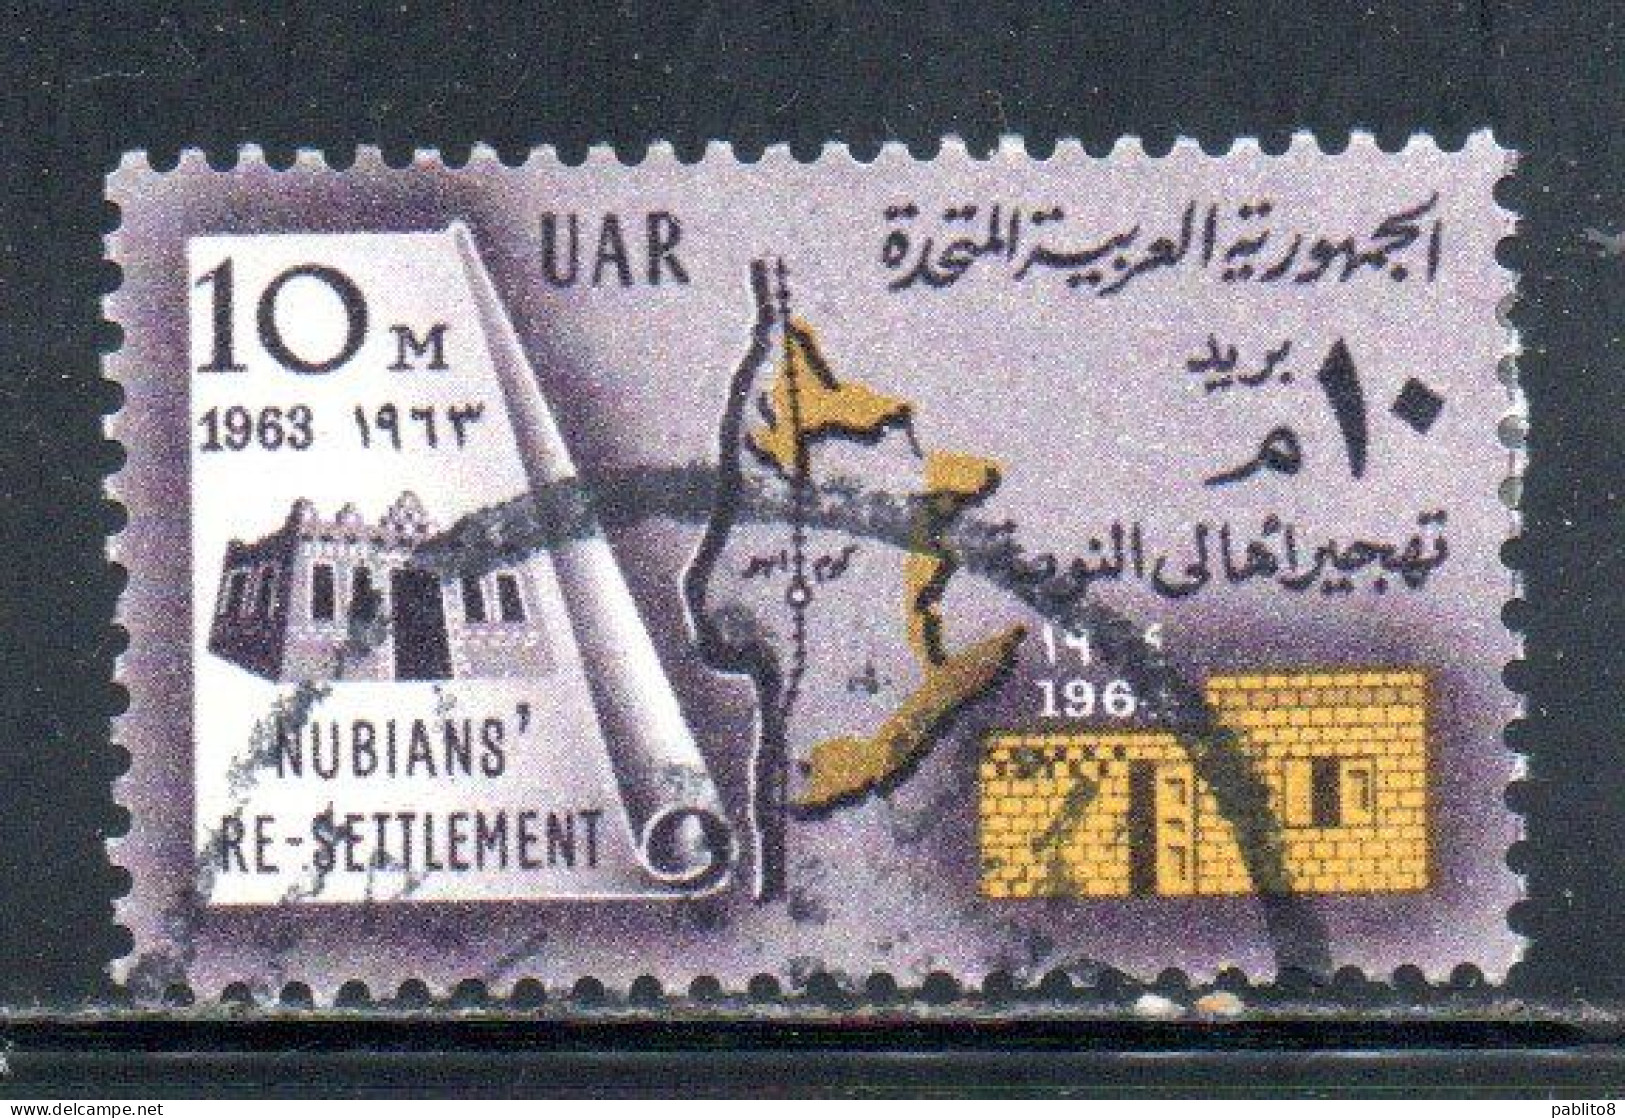 UAR EGYPT EGITTO 1964 RESETTLEMENT OF NUBIAN POPULATION 10m USED USATO OBLITERE' - Gebruikt